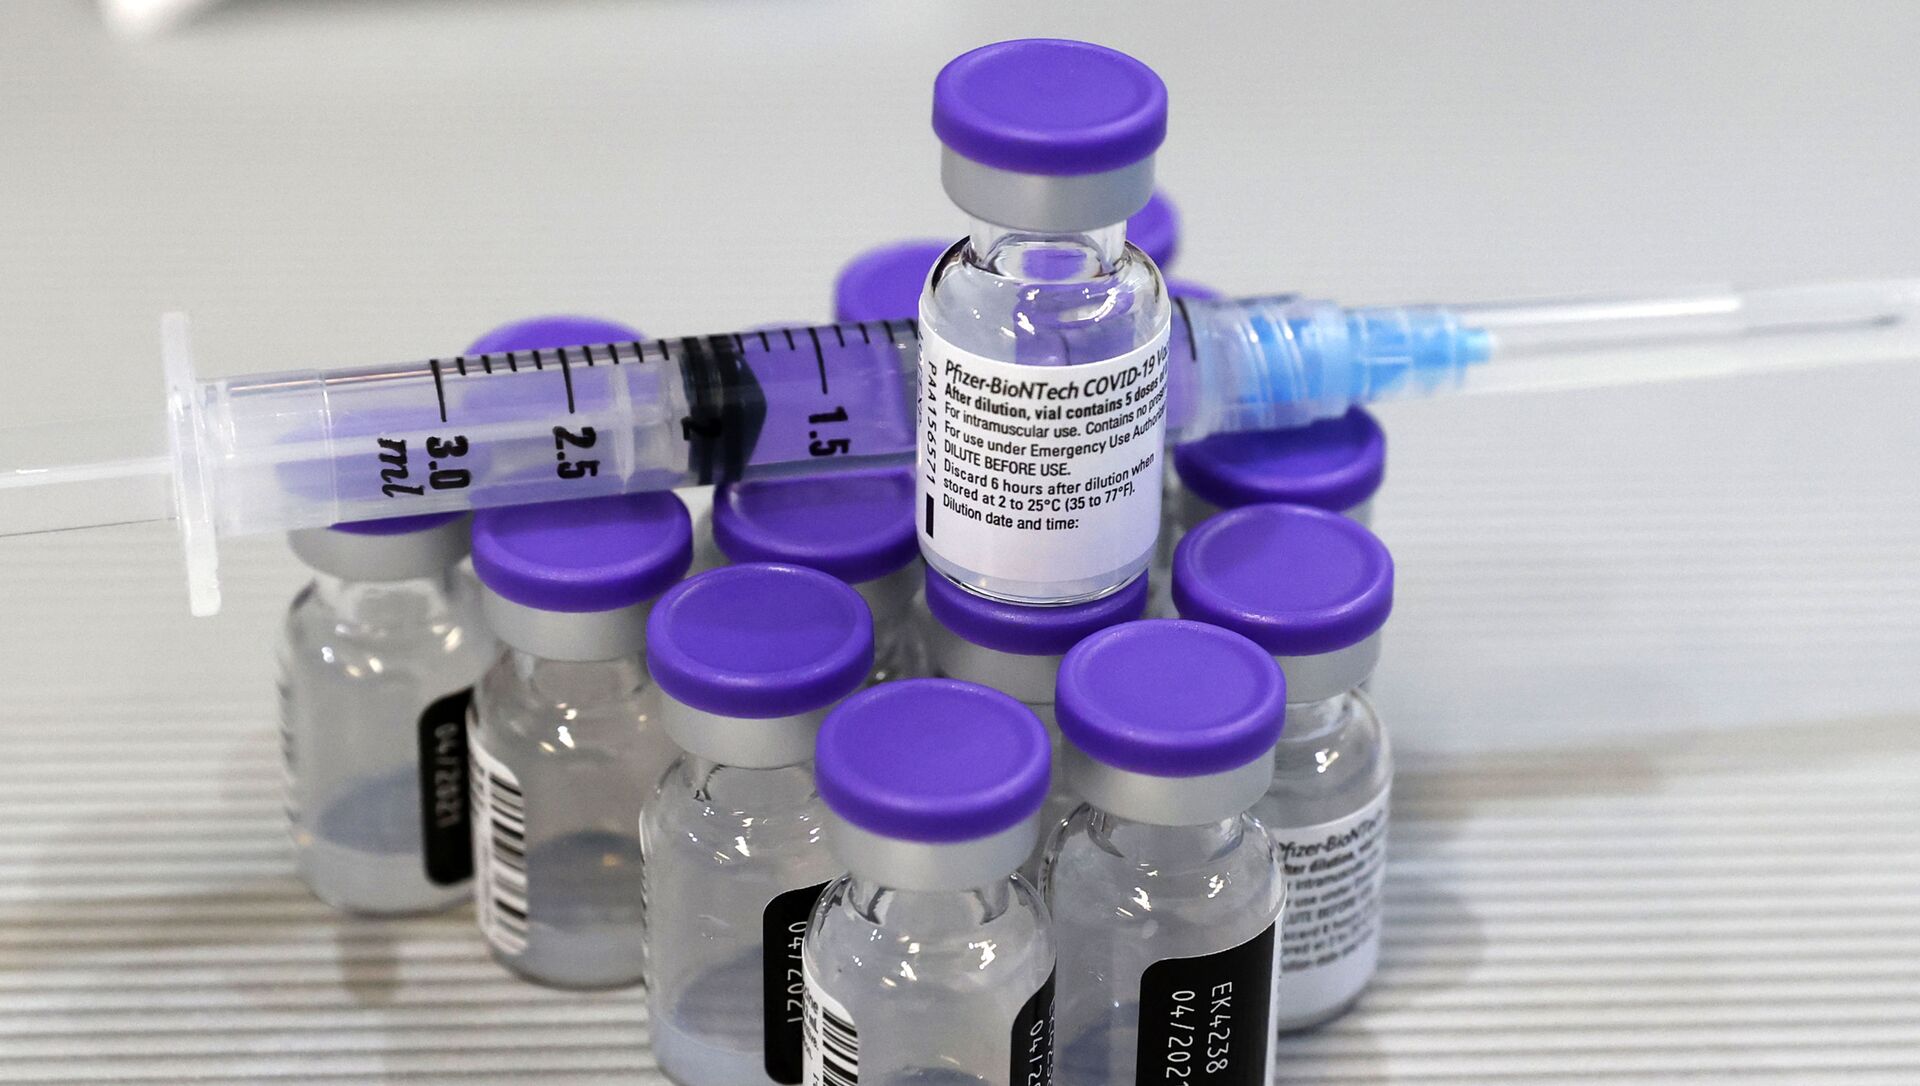 Шприц и флаконы с вакциной Pfizer-BioNTech COVID-19 изображены в Медицинском центре Шиба, крупнейшей больнице Израиля, в Рамат-Гане недалеко от прибрежного города Тель-Авив, 14 января 2021 года. успешно разворачивается: около двух миллионов граждан получили первую из двух необходимых инъекций укола Pfizer-BioNTech, и этот темп широко описывается как самый быстрый в мире на душу населения - Sputnik Аҧсны, 1920, 01.08.2021